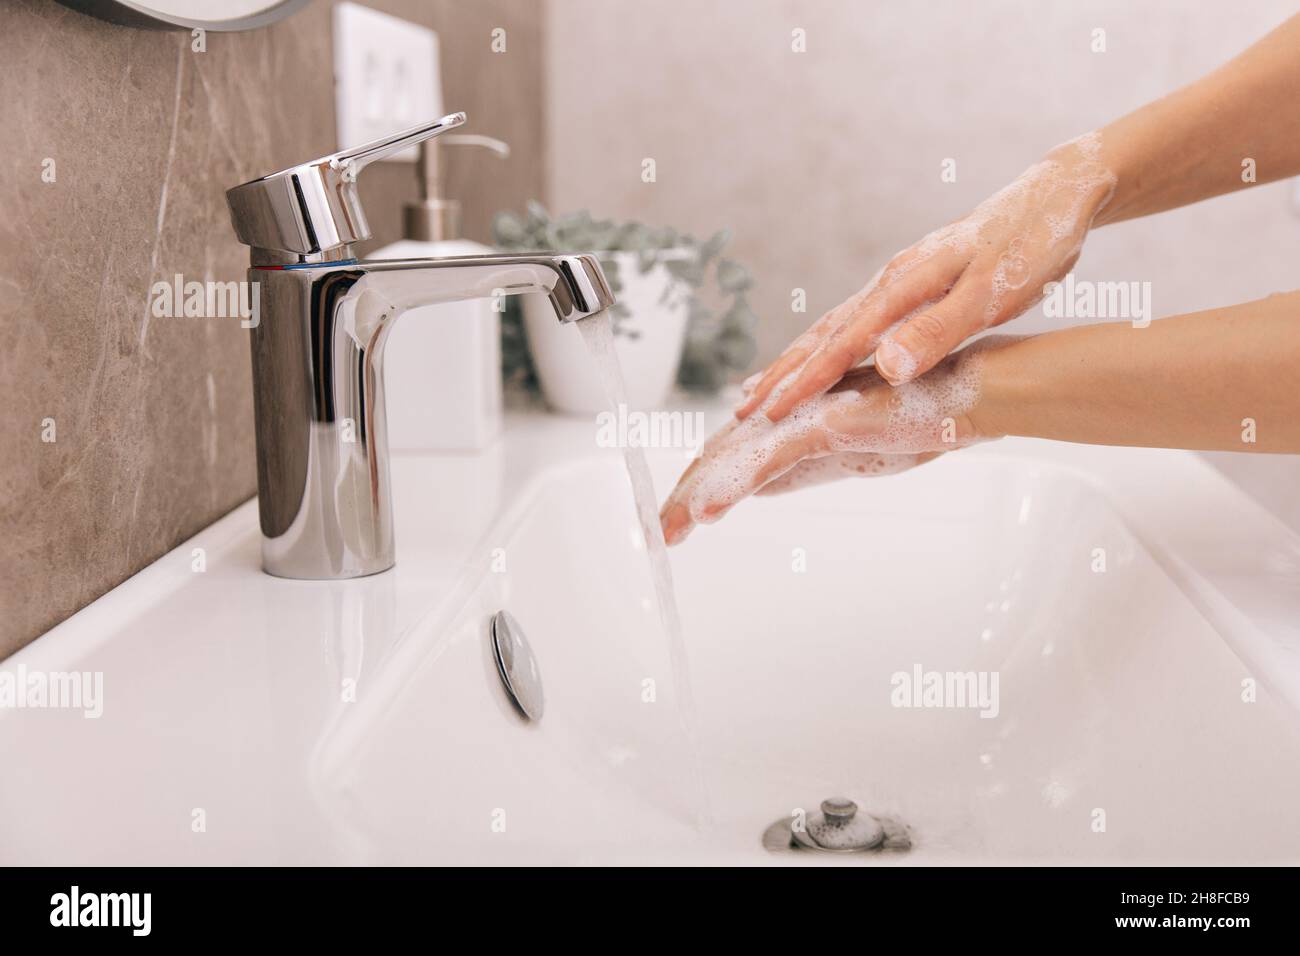 Händewaschen unter dem fliessenden Wasserhahn. Waschen von Händen, reiben mit Seife zur Vorbeugung von Corona-Viren, Hygiene, um die Ausbreitung des Corona-Virus im OP zu stoppen Stockfoto